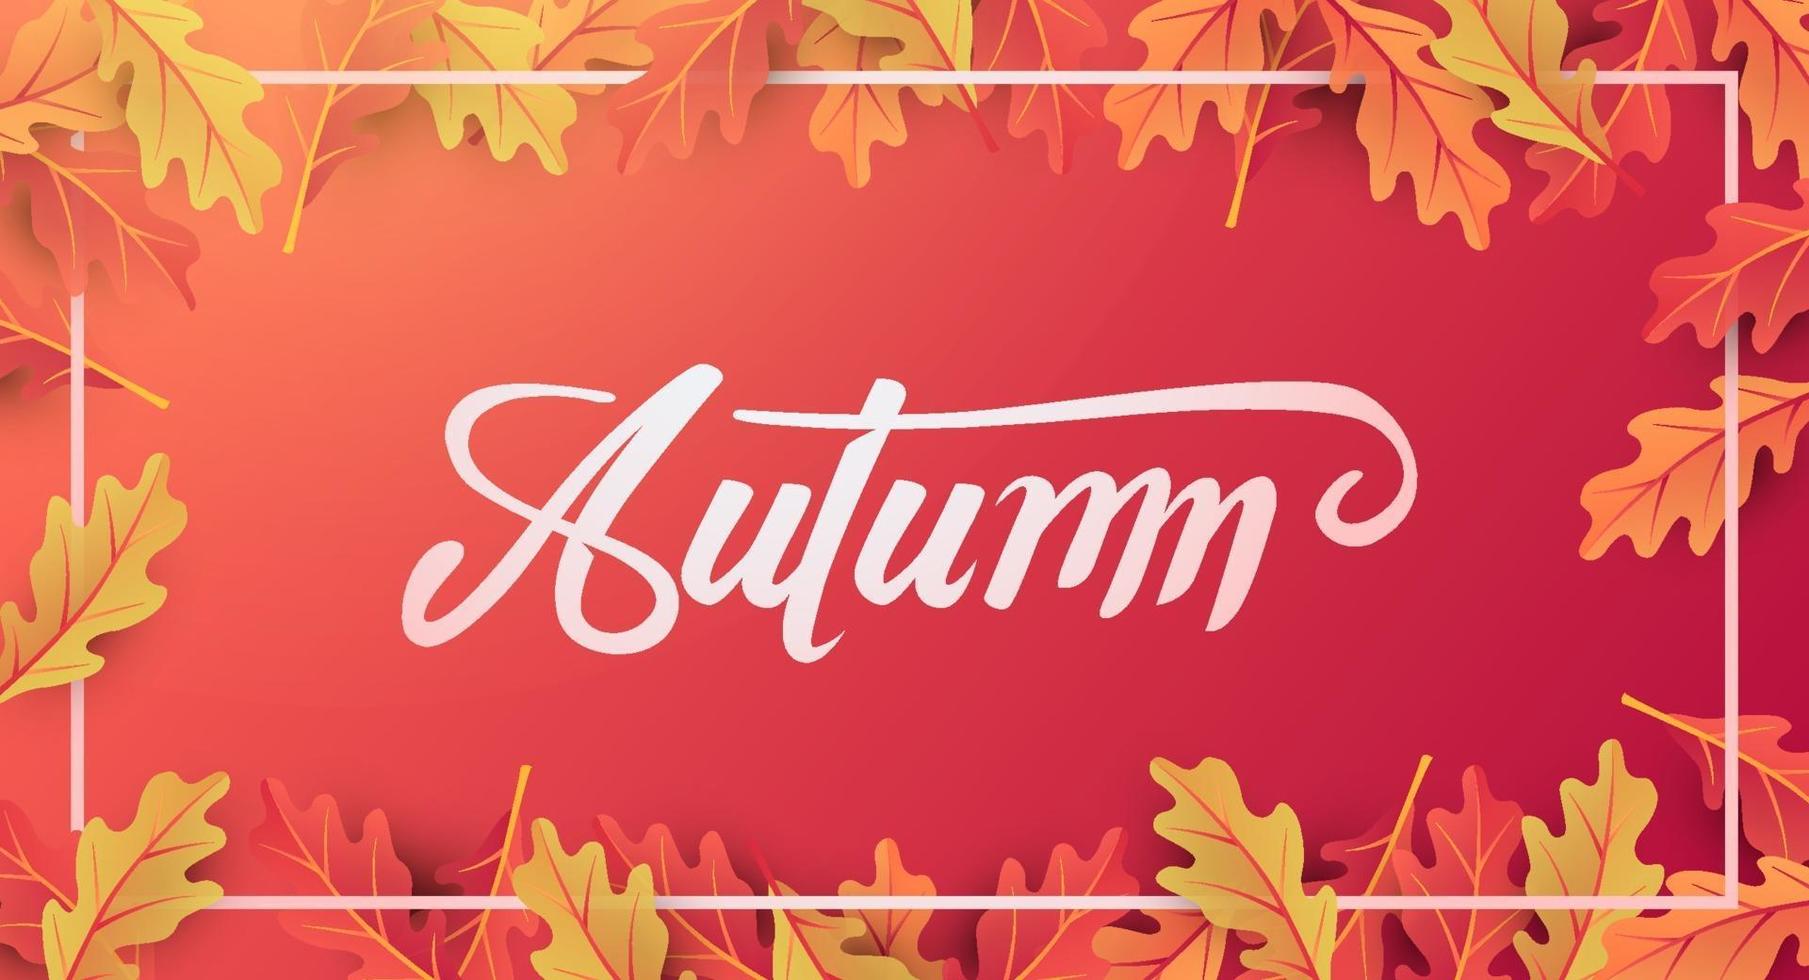 layout de fundo de banner de outono decorado com folhas vetor